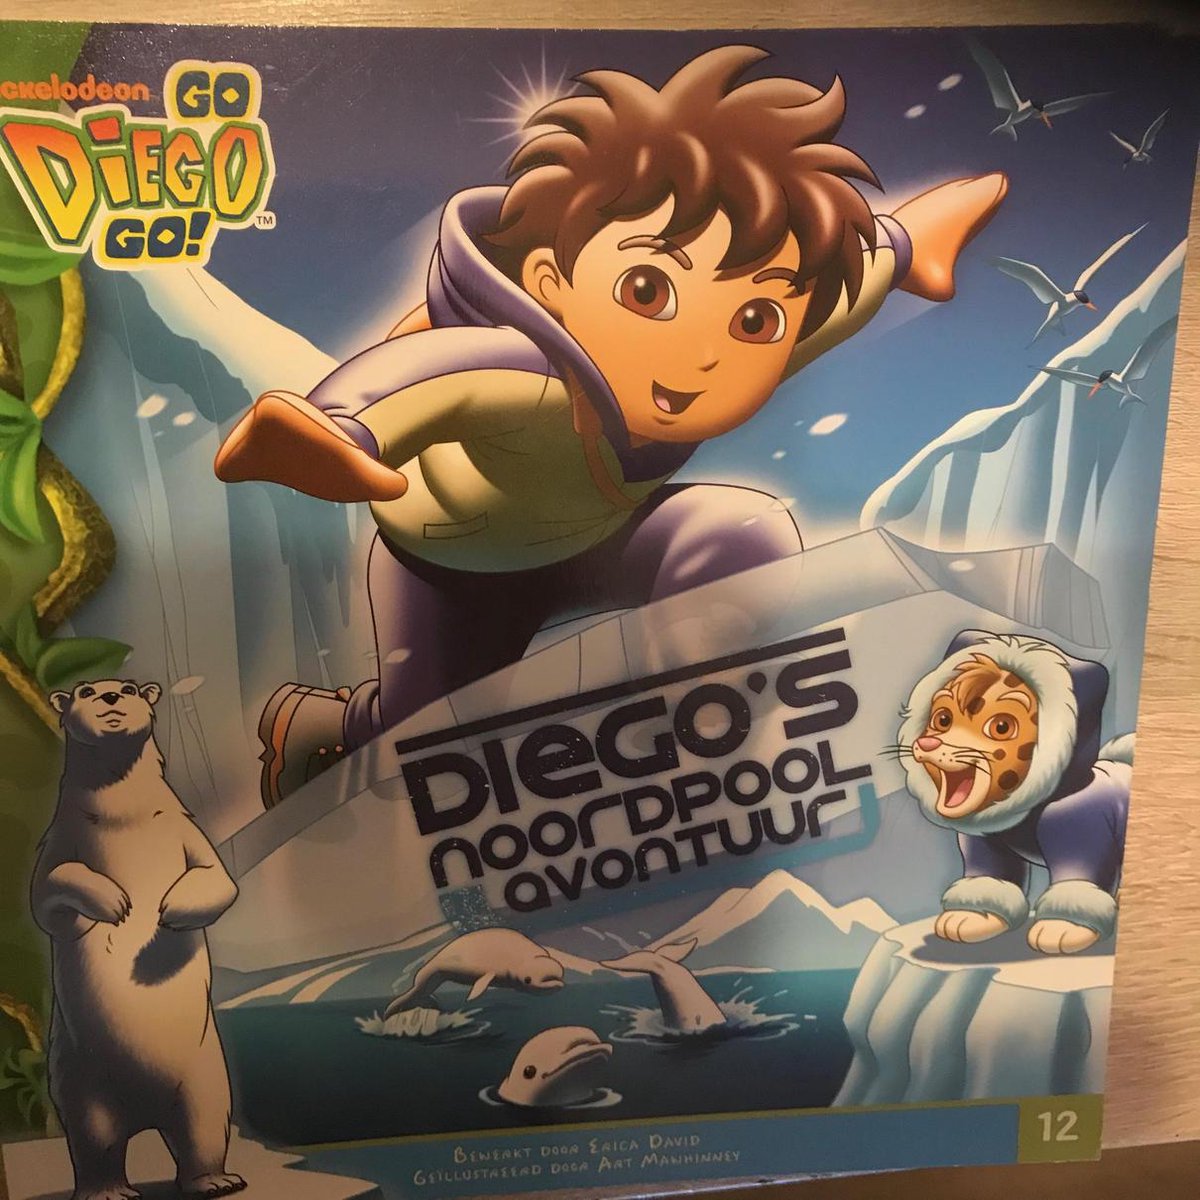 Diego - Diego's Noordpoolavontuur